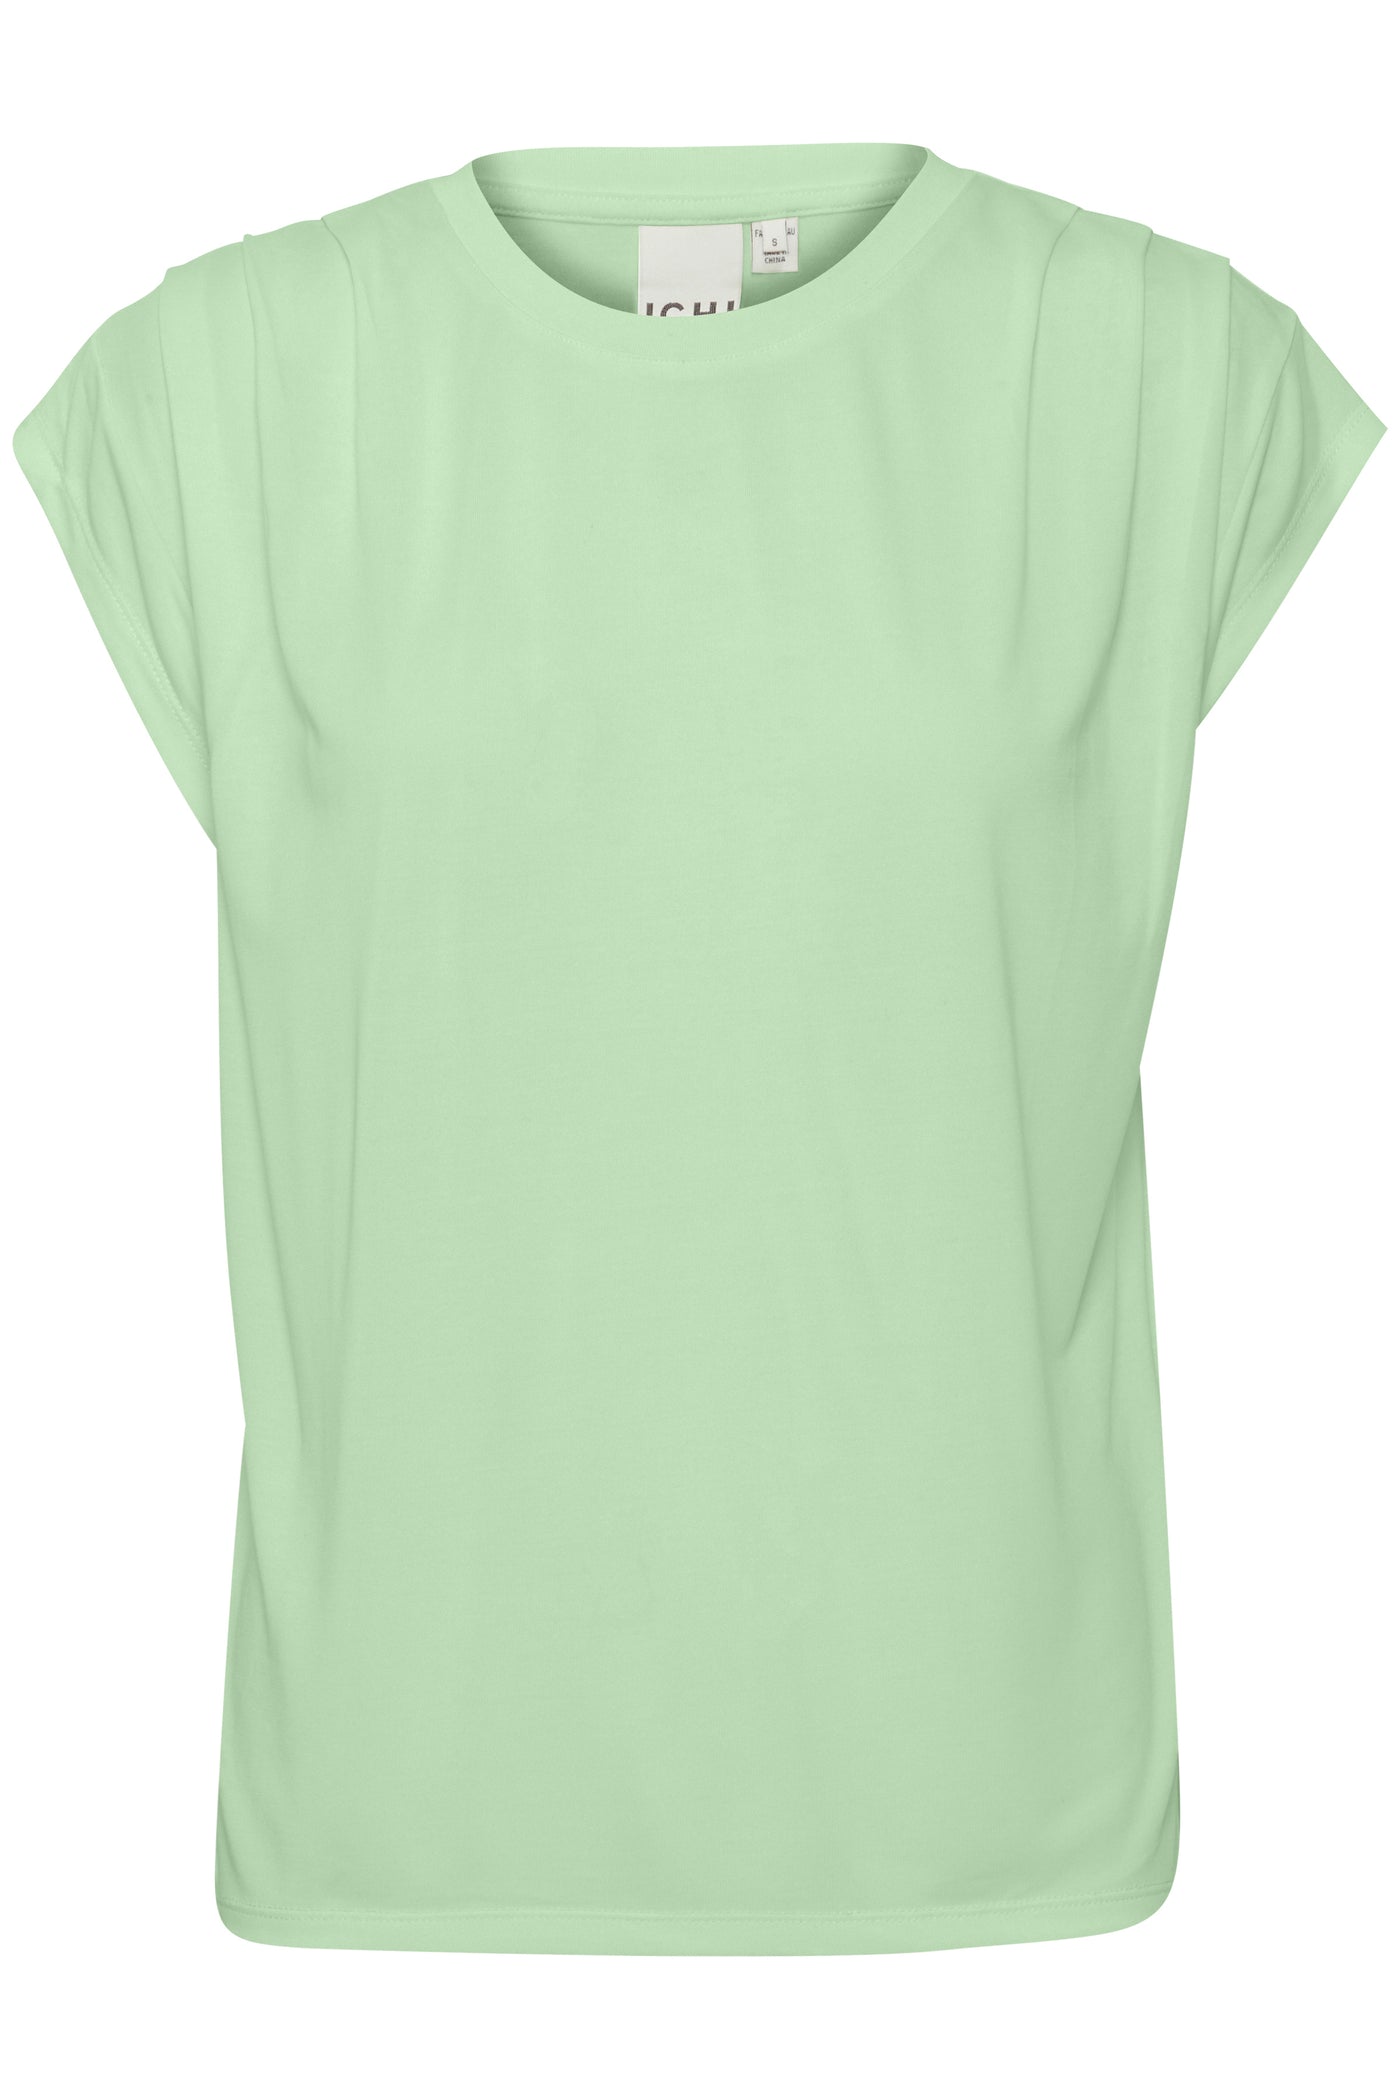 ICHI Lisken T-Shirt Green